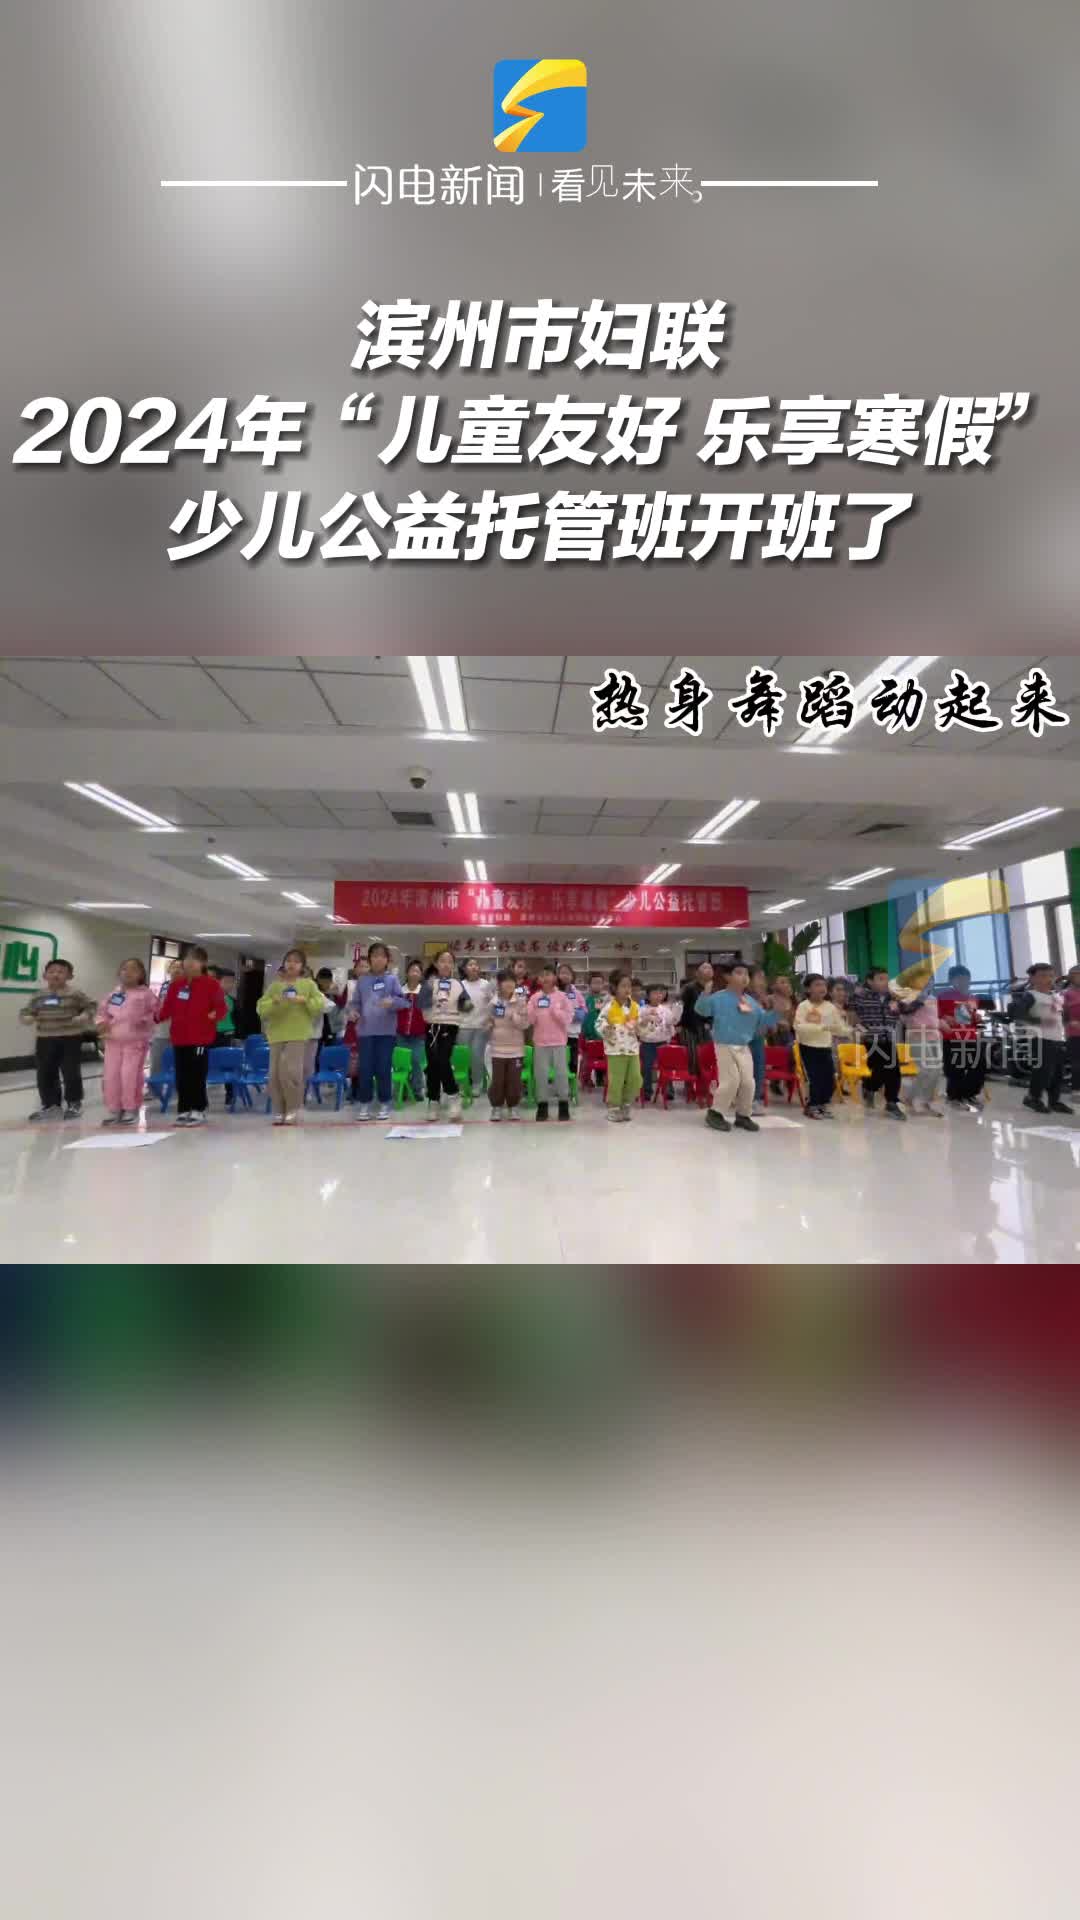 滨州市妇联2024年“儿童友好 乐享寒假”少儿公益托管班开班了